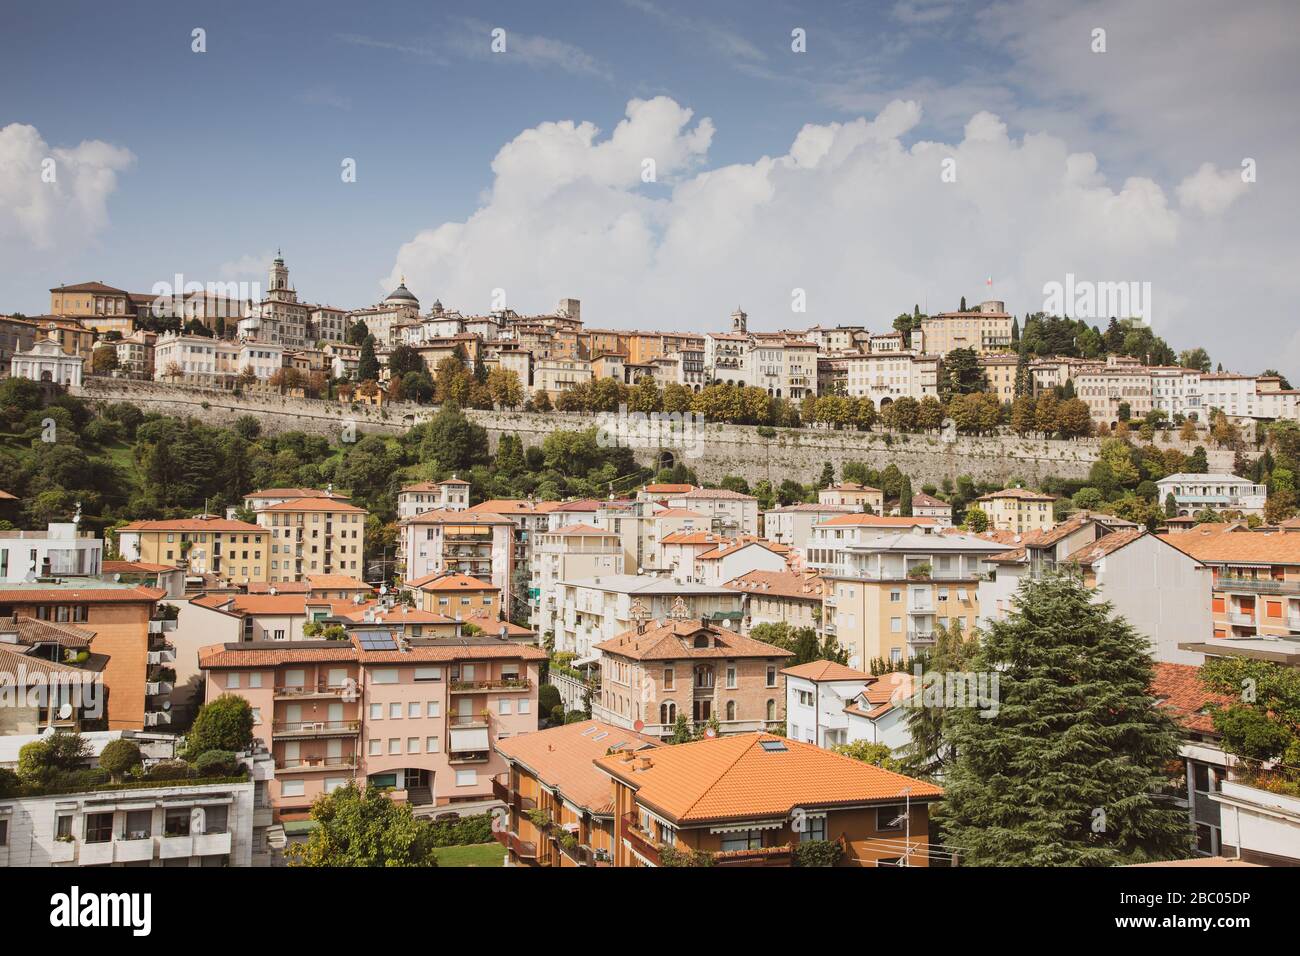 Immagine di Bergamo nella regione Lombardia d'Italia vicino Milano presa prima dello scoppio di Coronavirus. Foto Stock